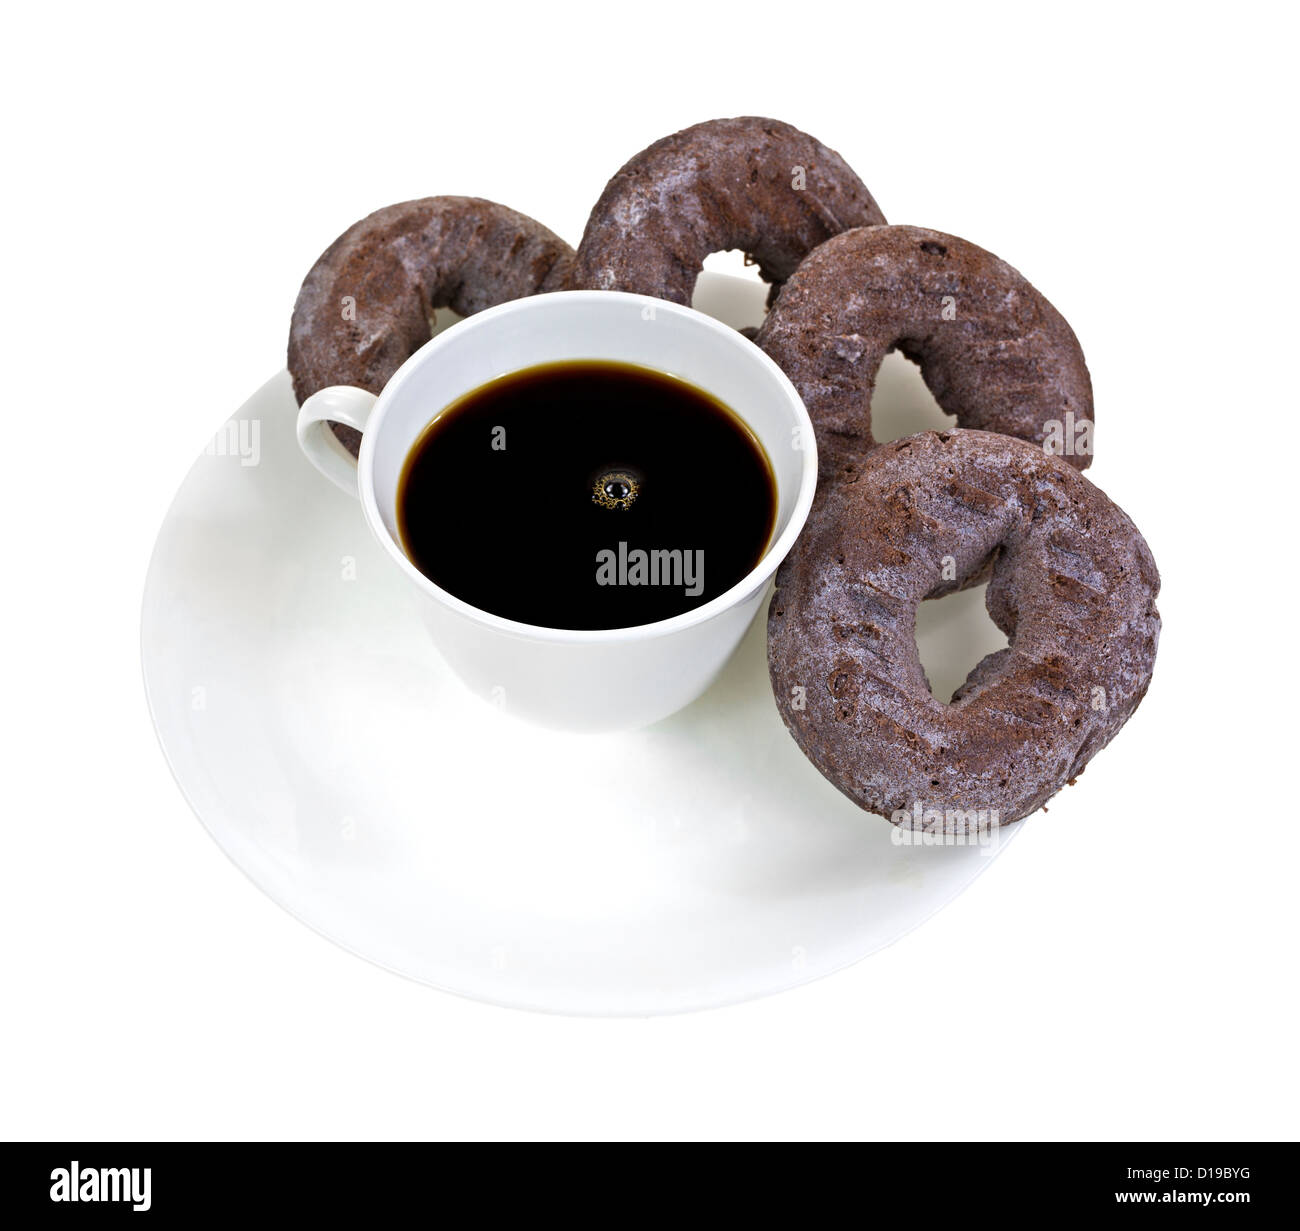 Quatre beignets au chocolat sur une plaque avec une tasse de café noir sur fond blanc. Banque D'Images